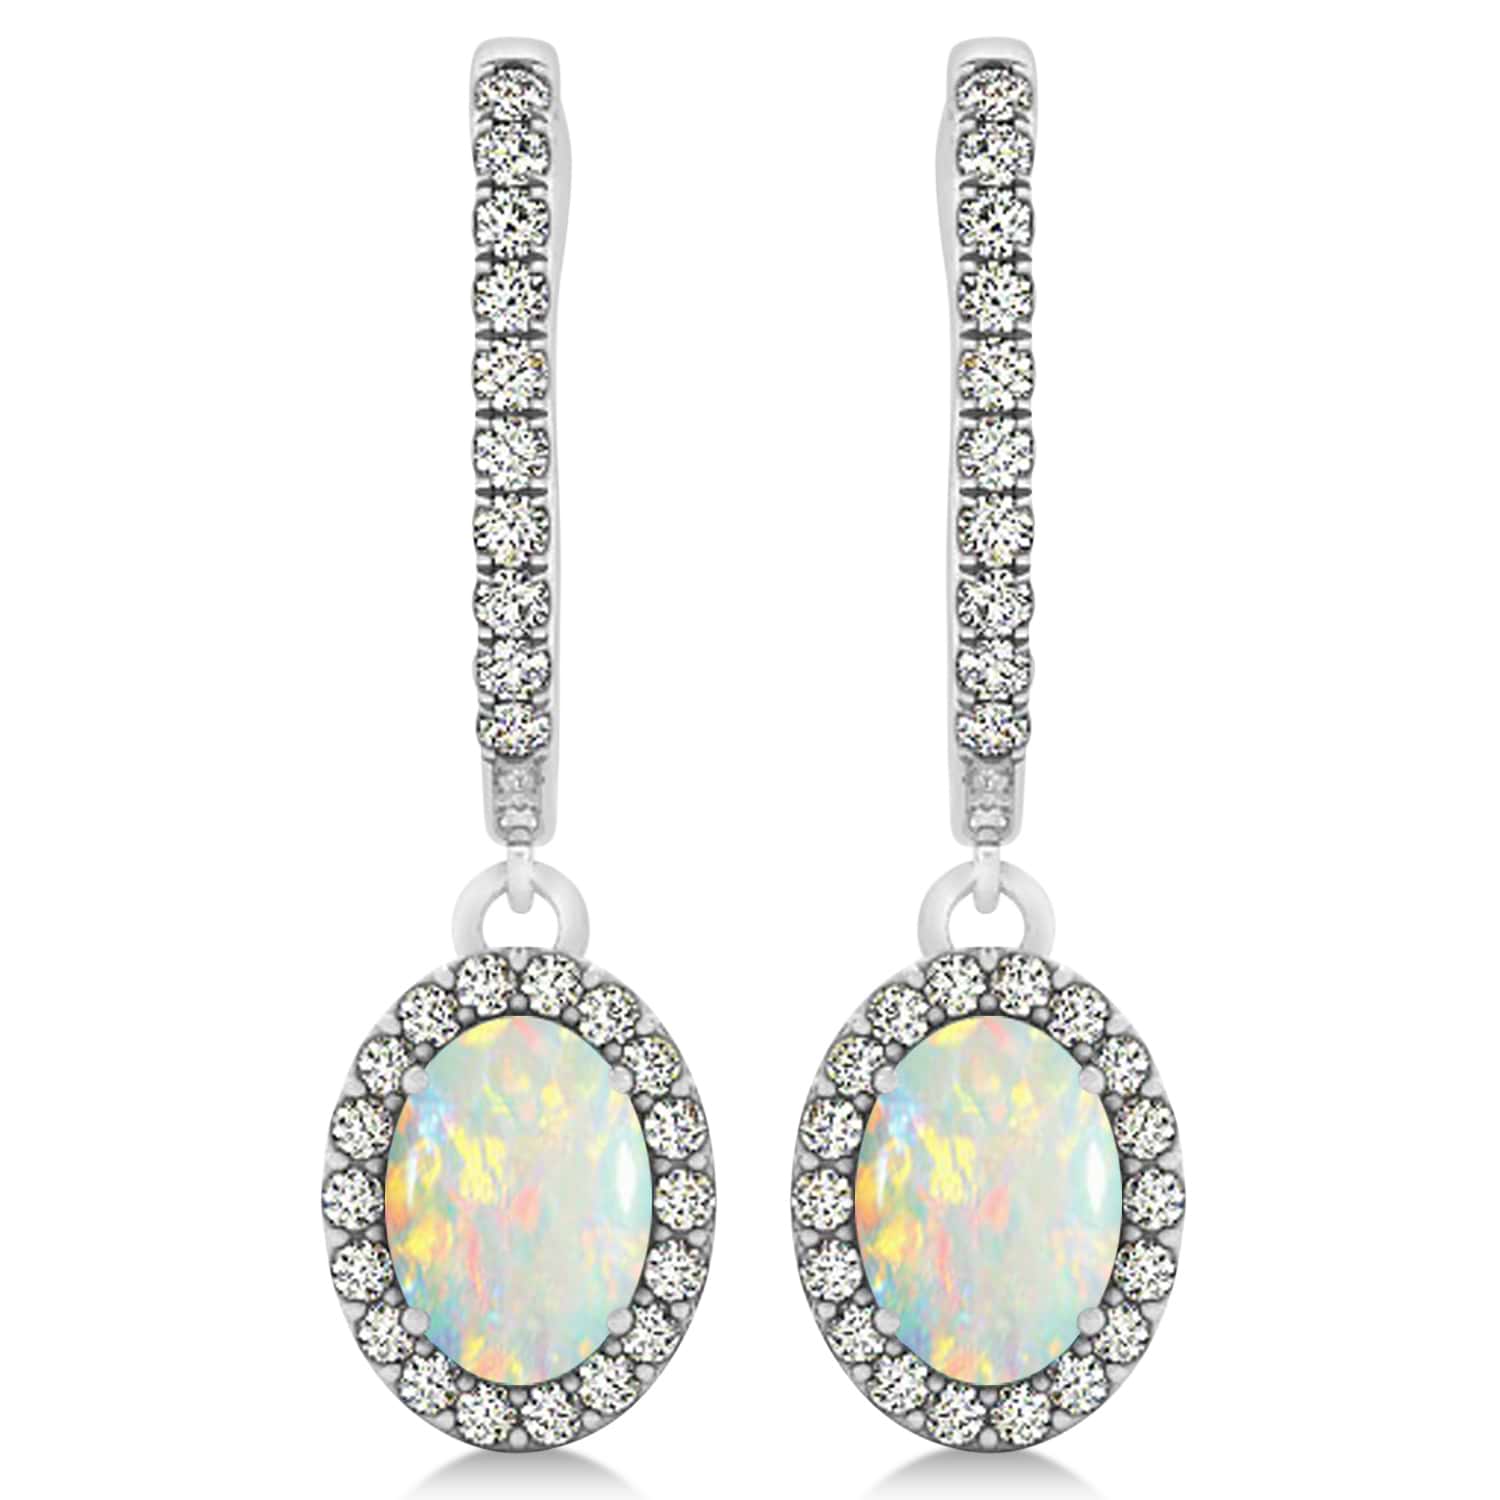 Oval Halo Diamond & Opal Drop Earrings in 14k White Gold 0.96ct